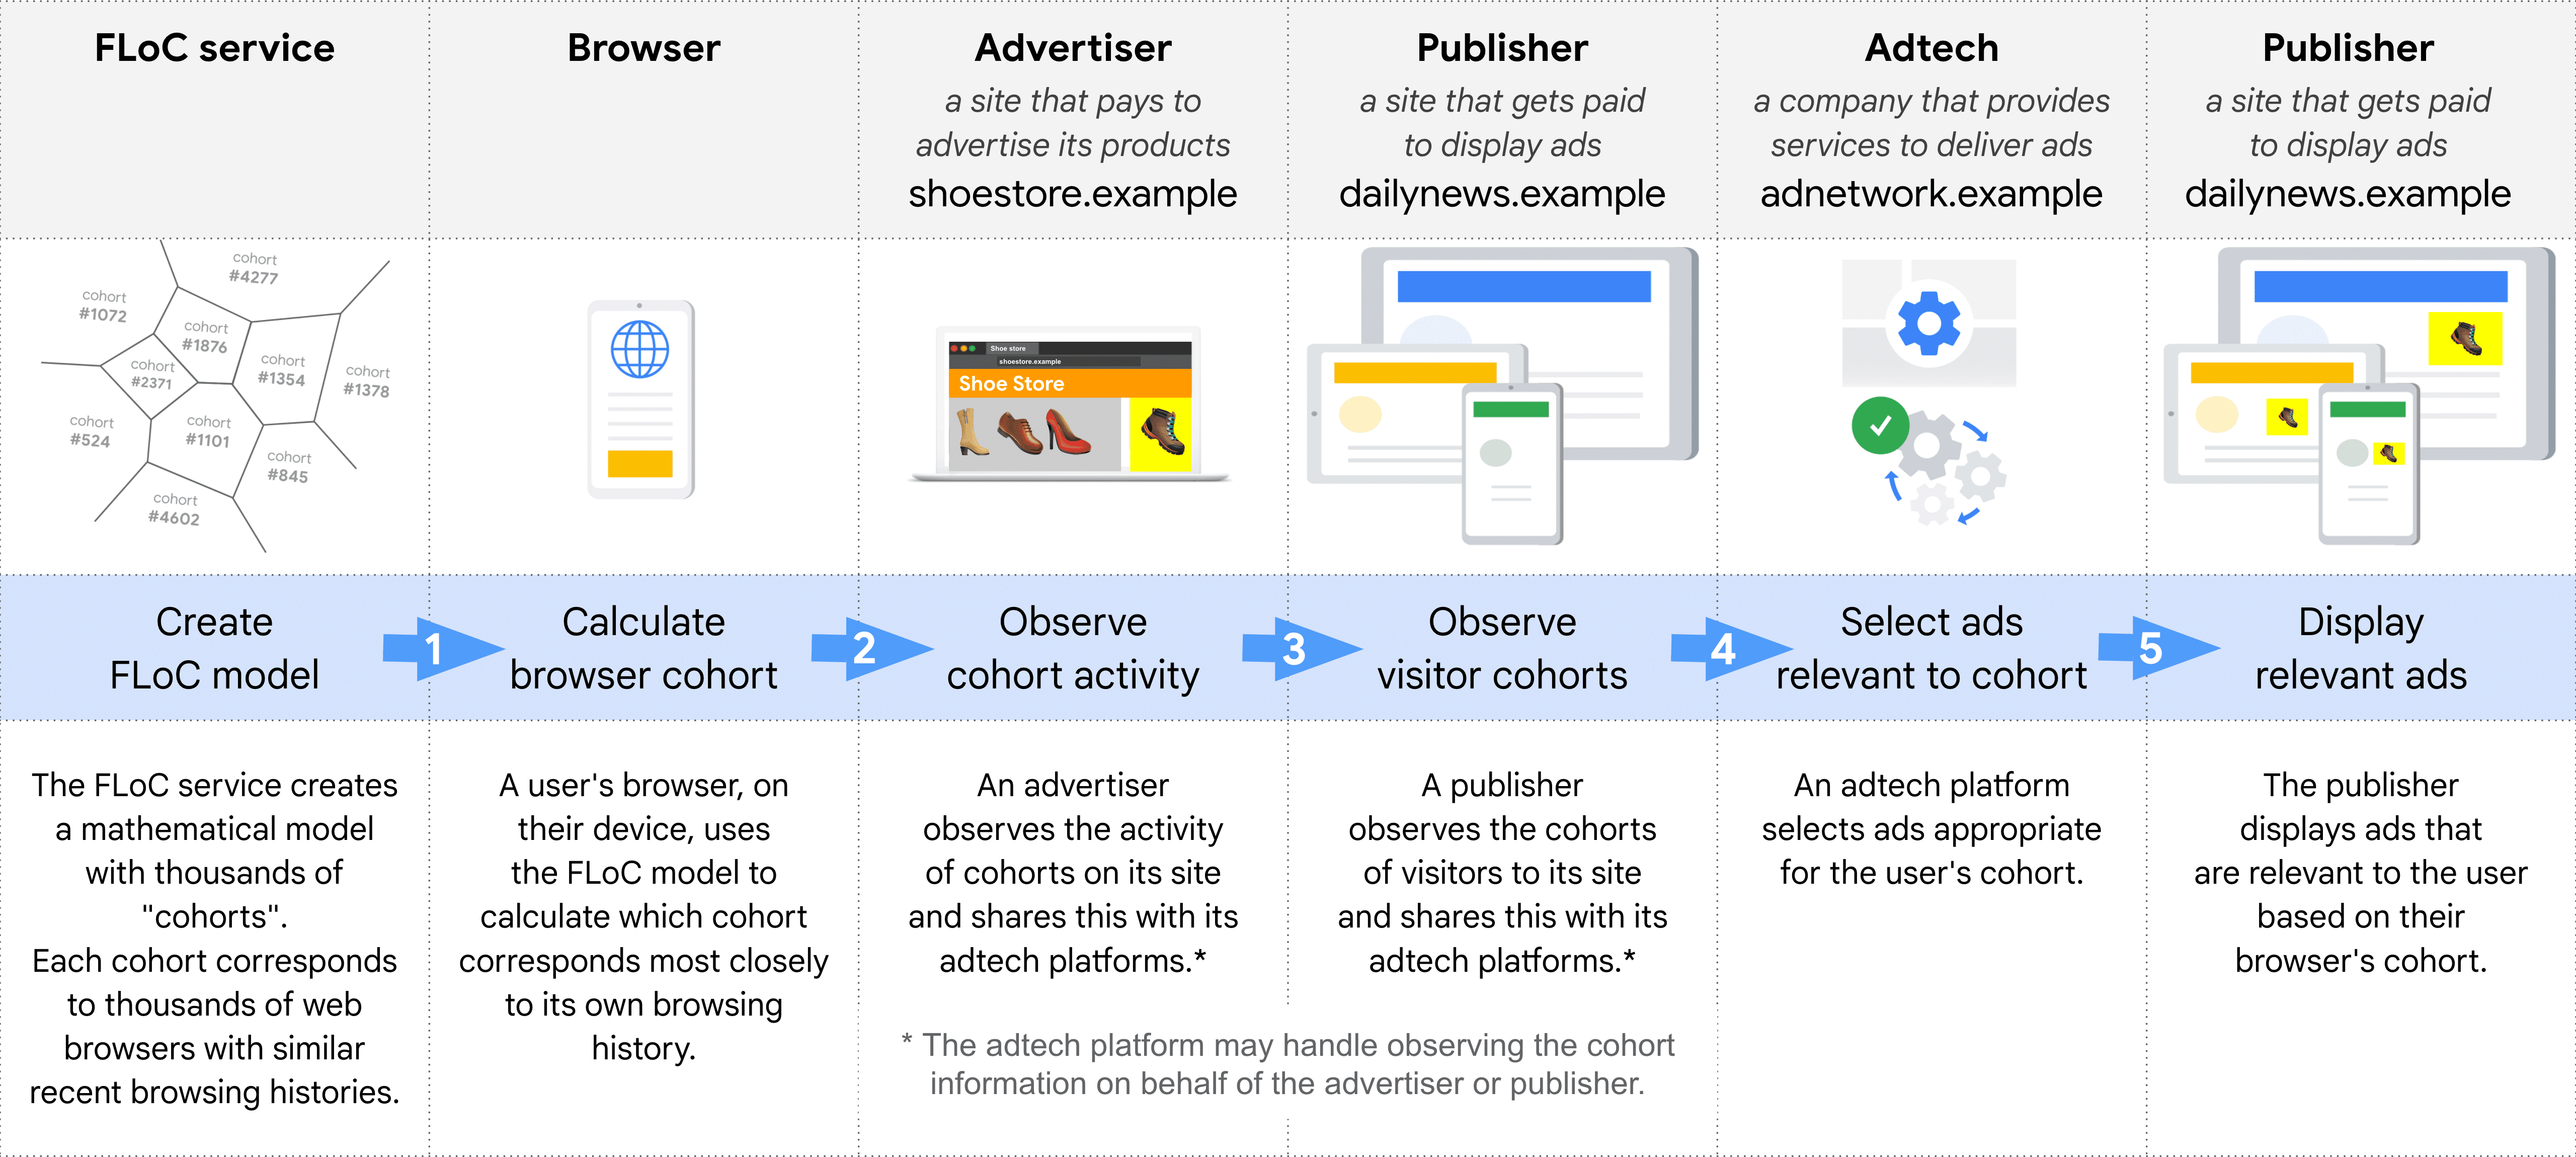 FLoC을 사용하여 광고를 선택하고 게재하는 다양한 역할(FLoC 서비스, 브라우저, 광고주, 게시자(동질 집단 관찰), 광고 기술, 게시자(광고 표시))을 단계별로 보여주는 다이어그램